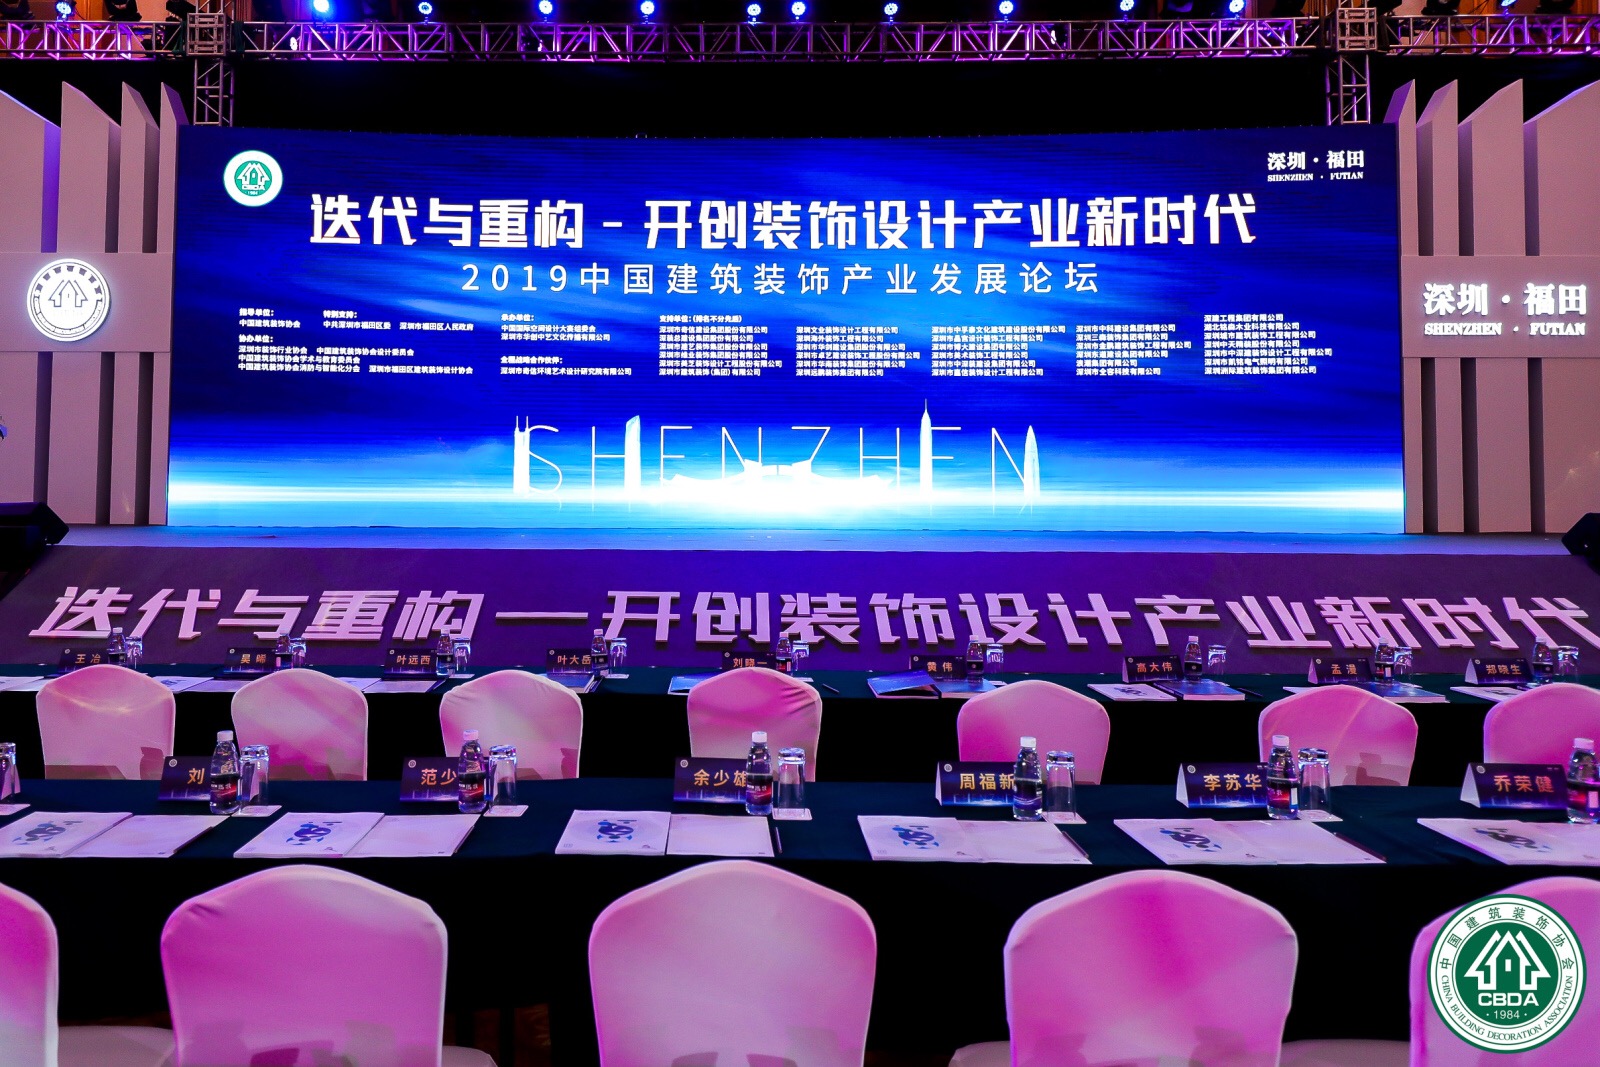 品彦设计荣获第9届中国国际空间设计大奖，标志着深圳品彦已成为具有核心竞争的室内设计公司